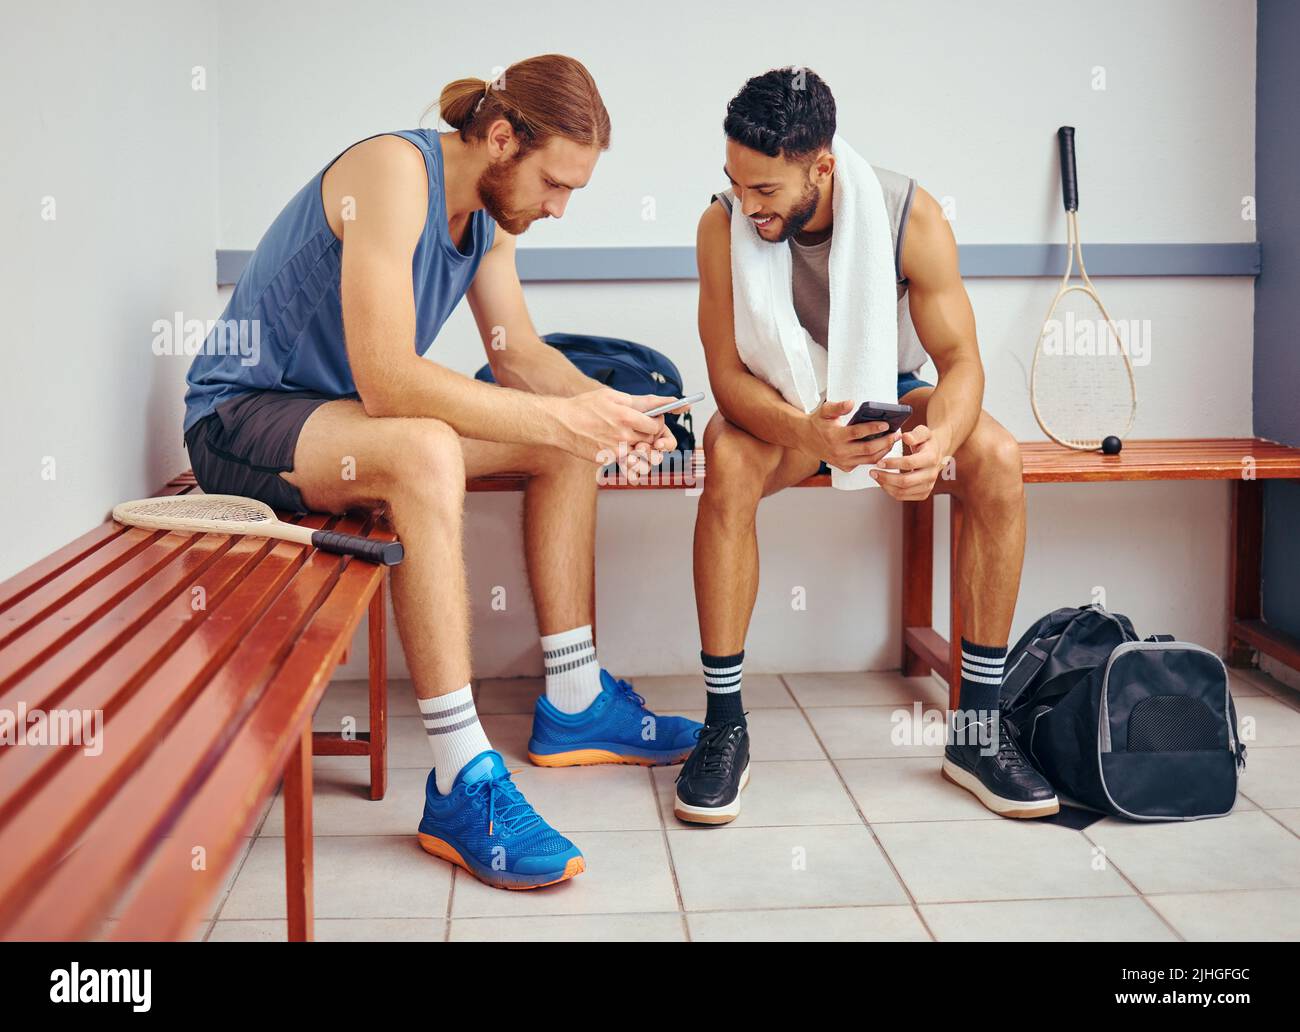 Dos jugadores se unen en su vestuario del gimnasio. Dos atletas profesionales que utilizan sus teléfonos móviles juntos. Jugadores profesionales de squash hablando y usando Foto de stock